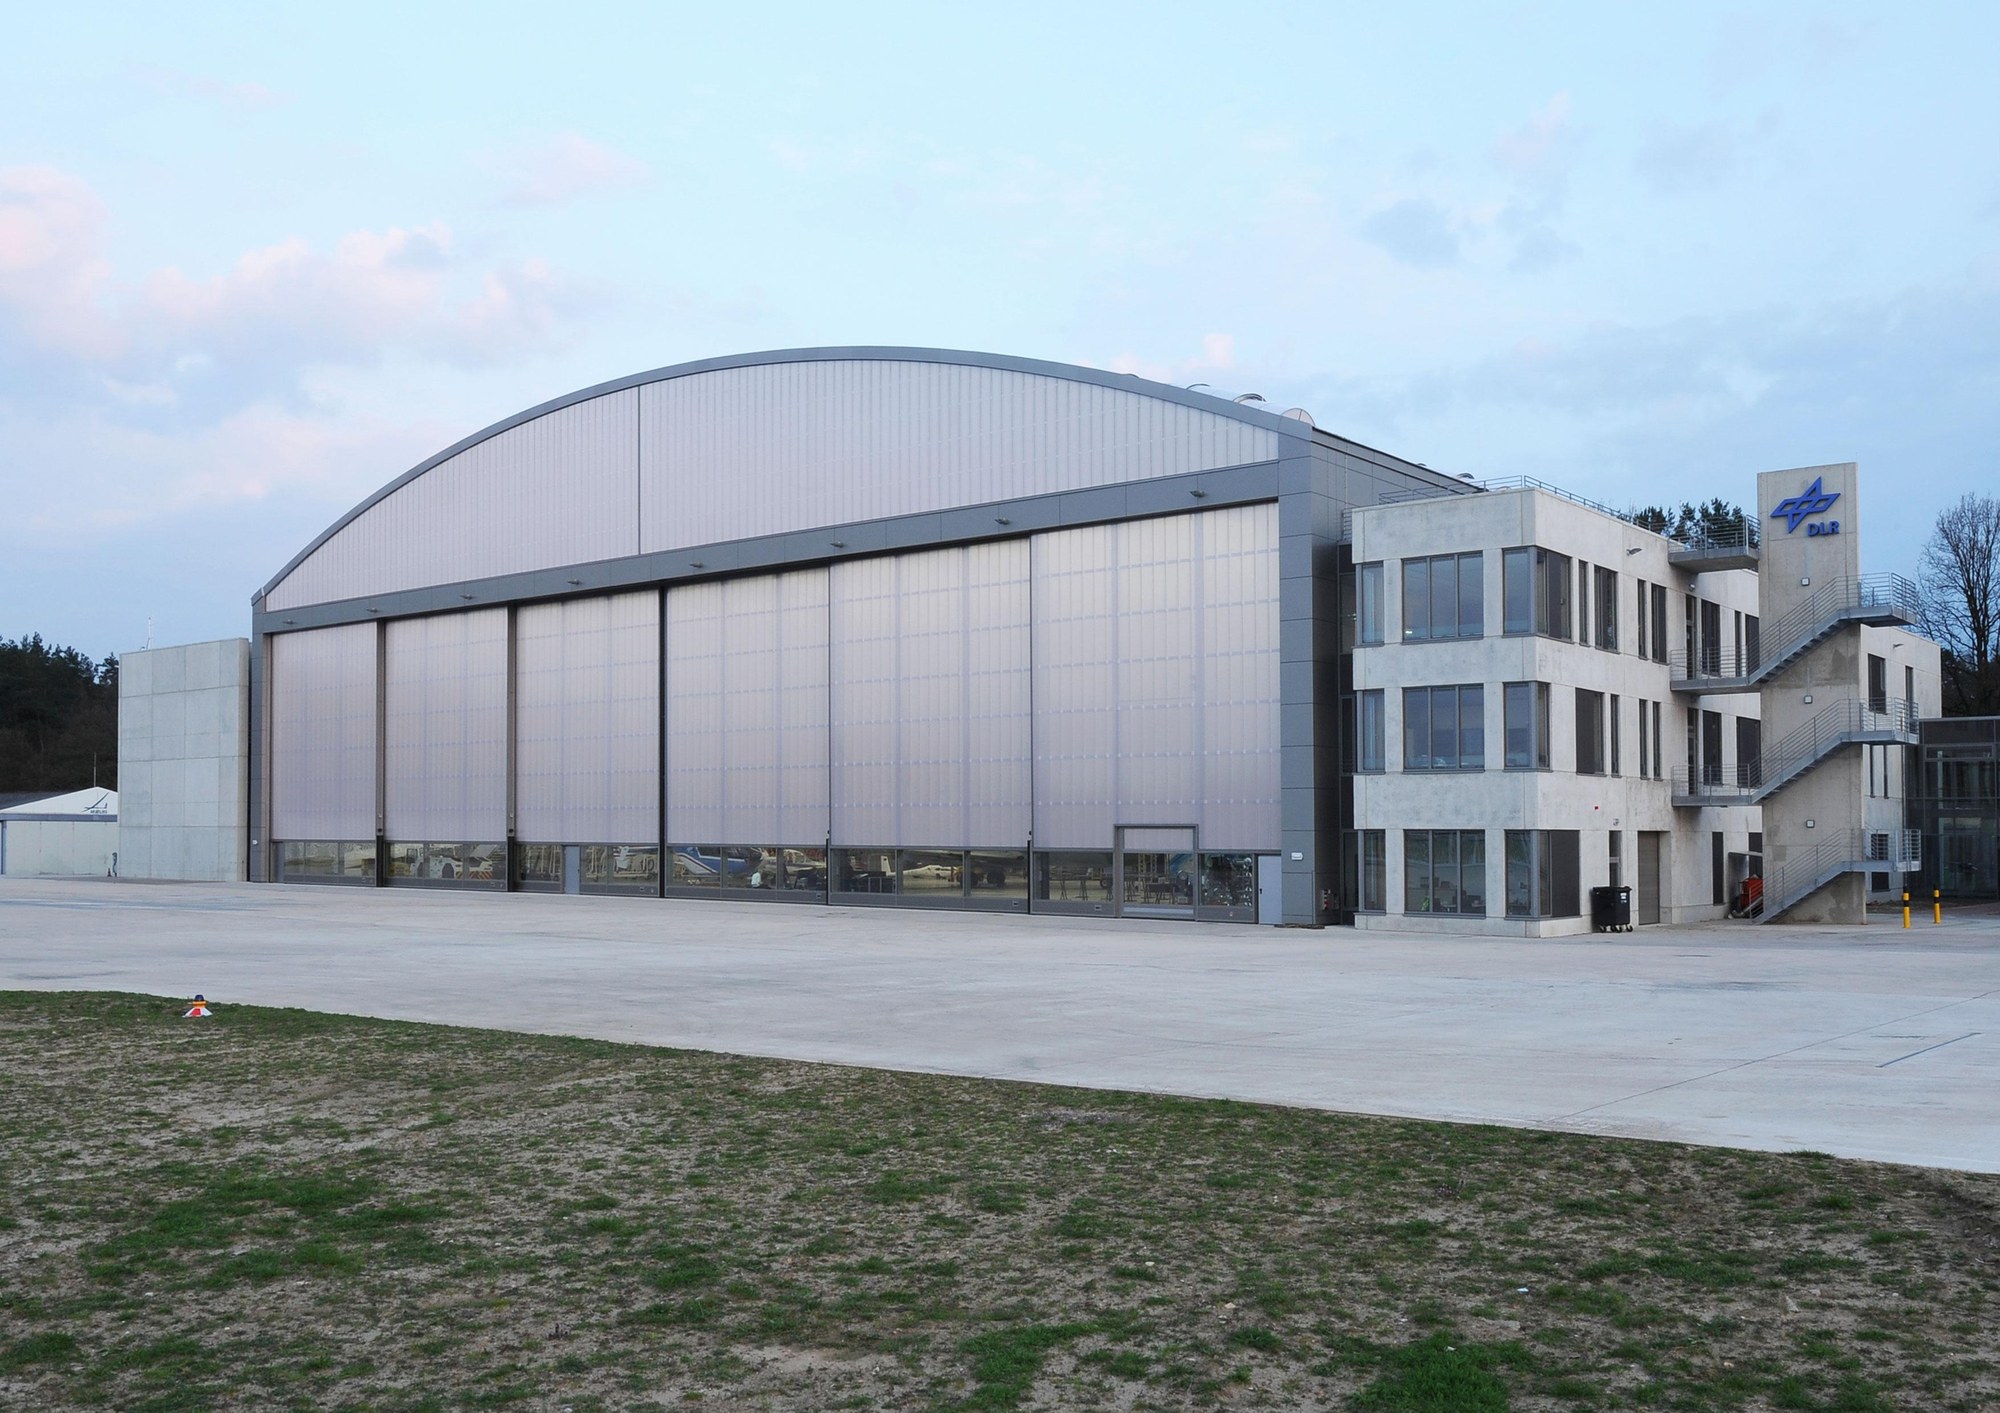 DLR hangar in Braunschweig